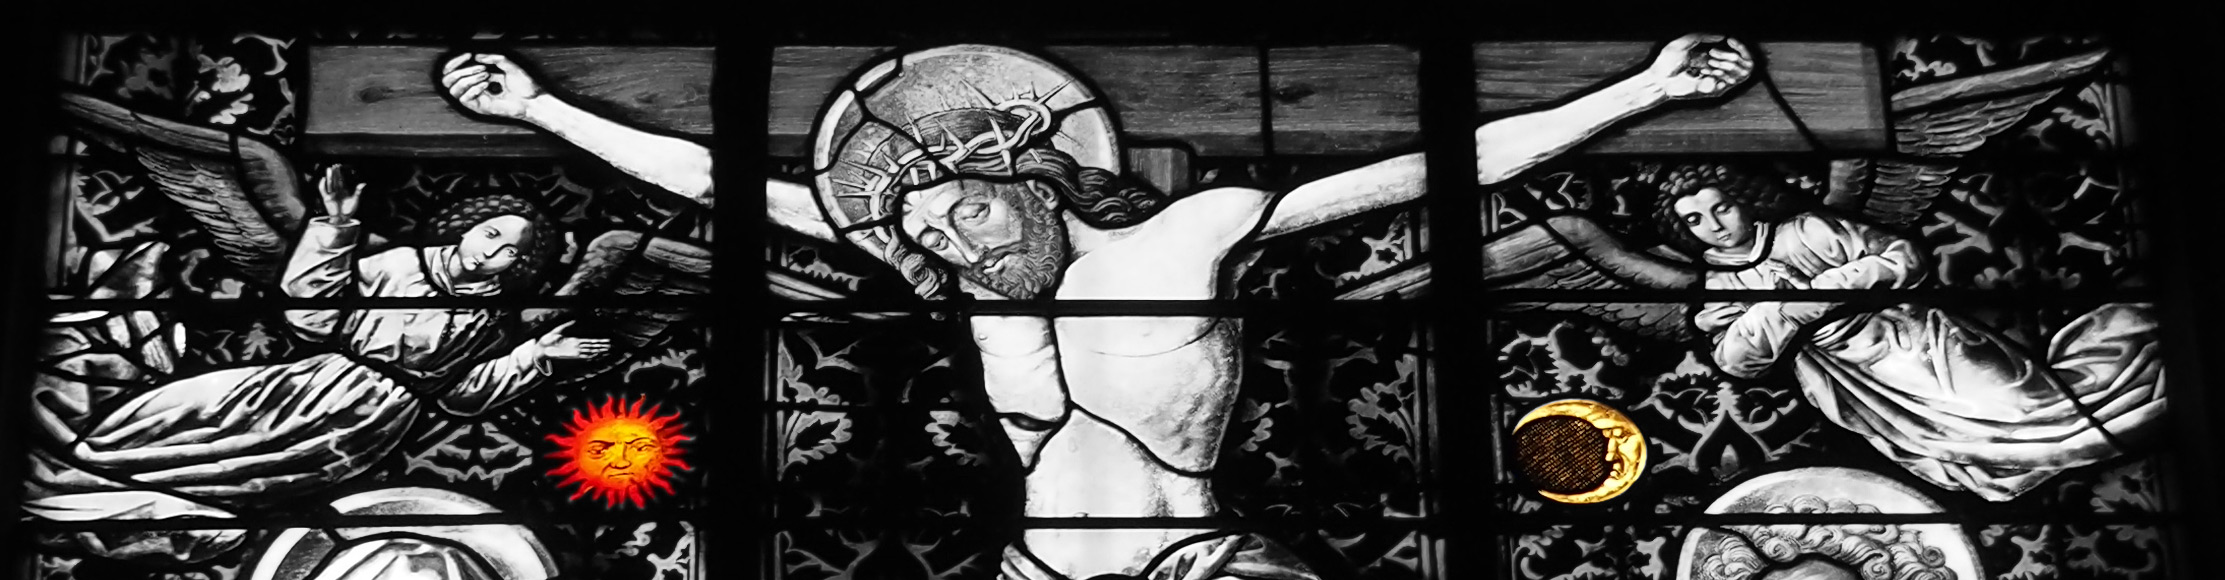 Détails - vitrail de la crucifixion - église Saints-Pierre-et-Paul - Obernai